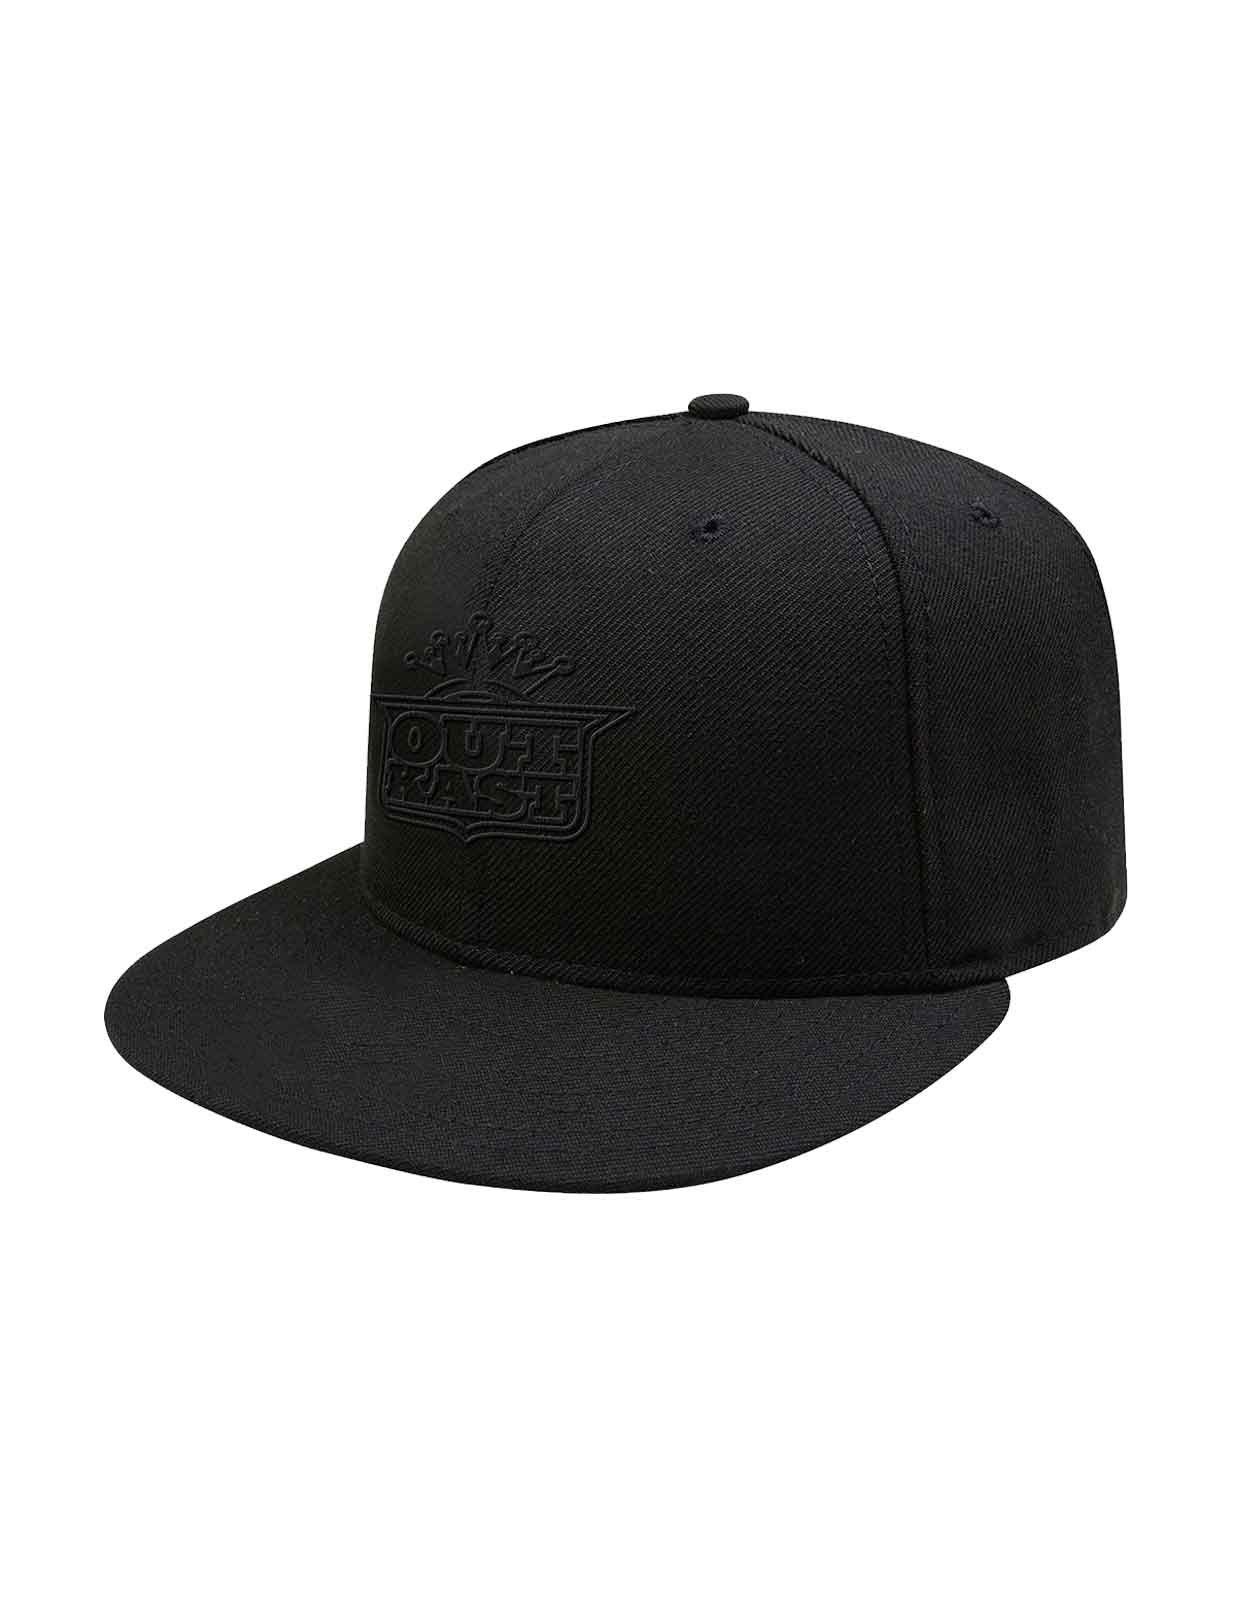 Бейсбольная кепка Imperial Crown Snapback Outkast, черный бейсболка snapback с тонким логотипом shady eminem черный